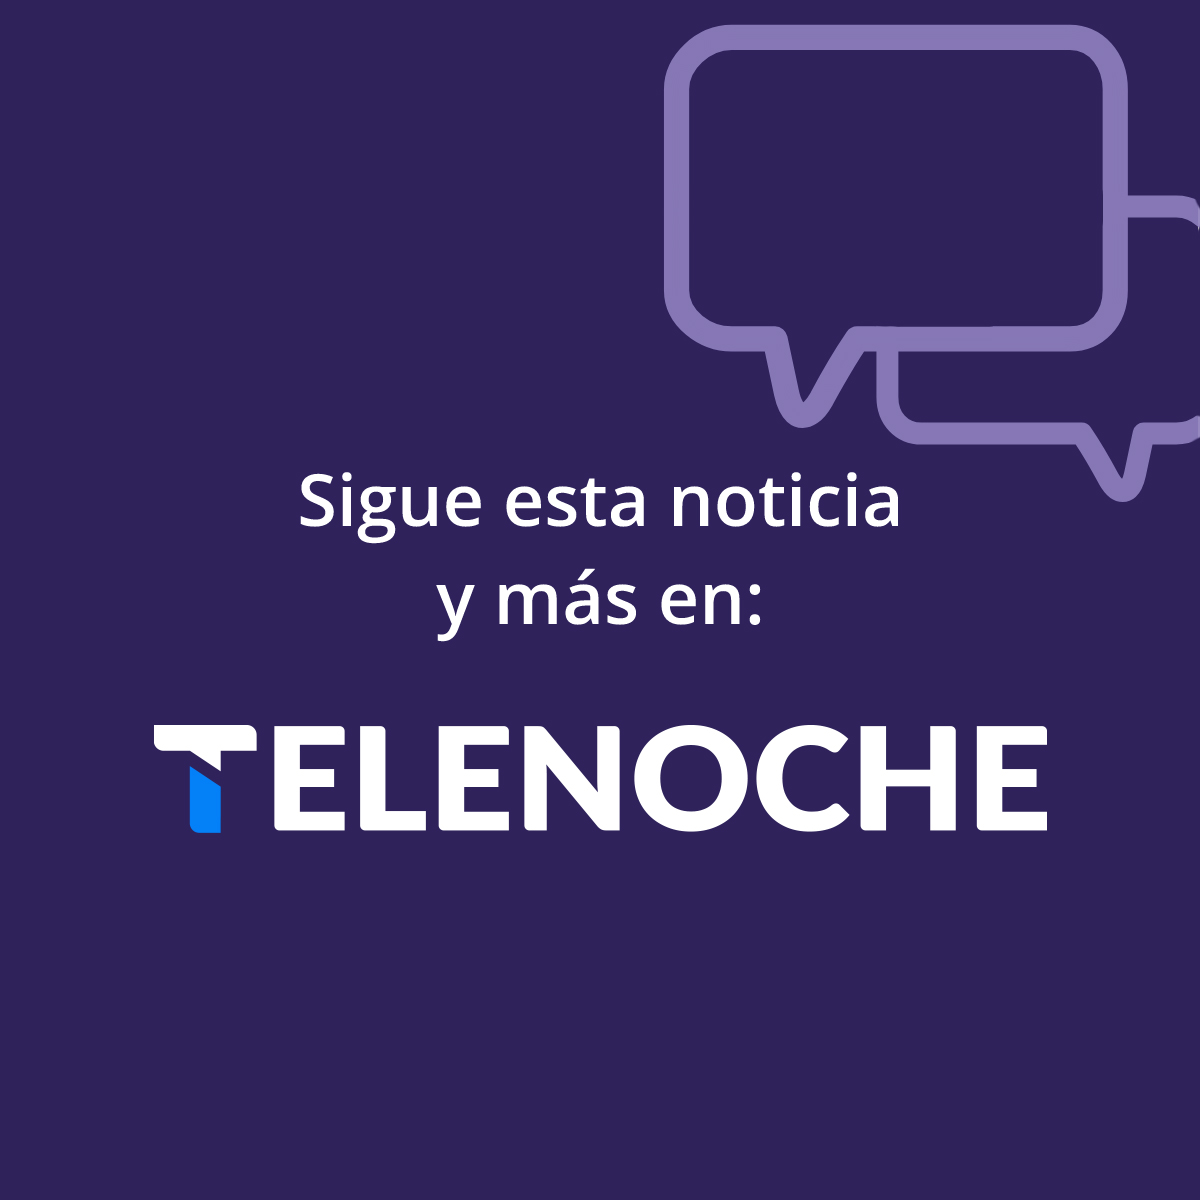 Perfil - Últimas noticias de Uruguay y del mundo en TELENOCHE